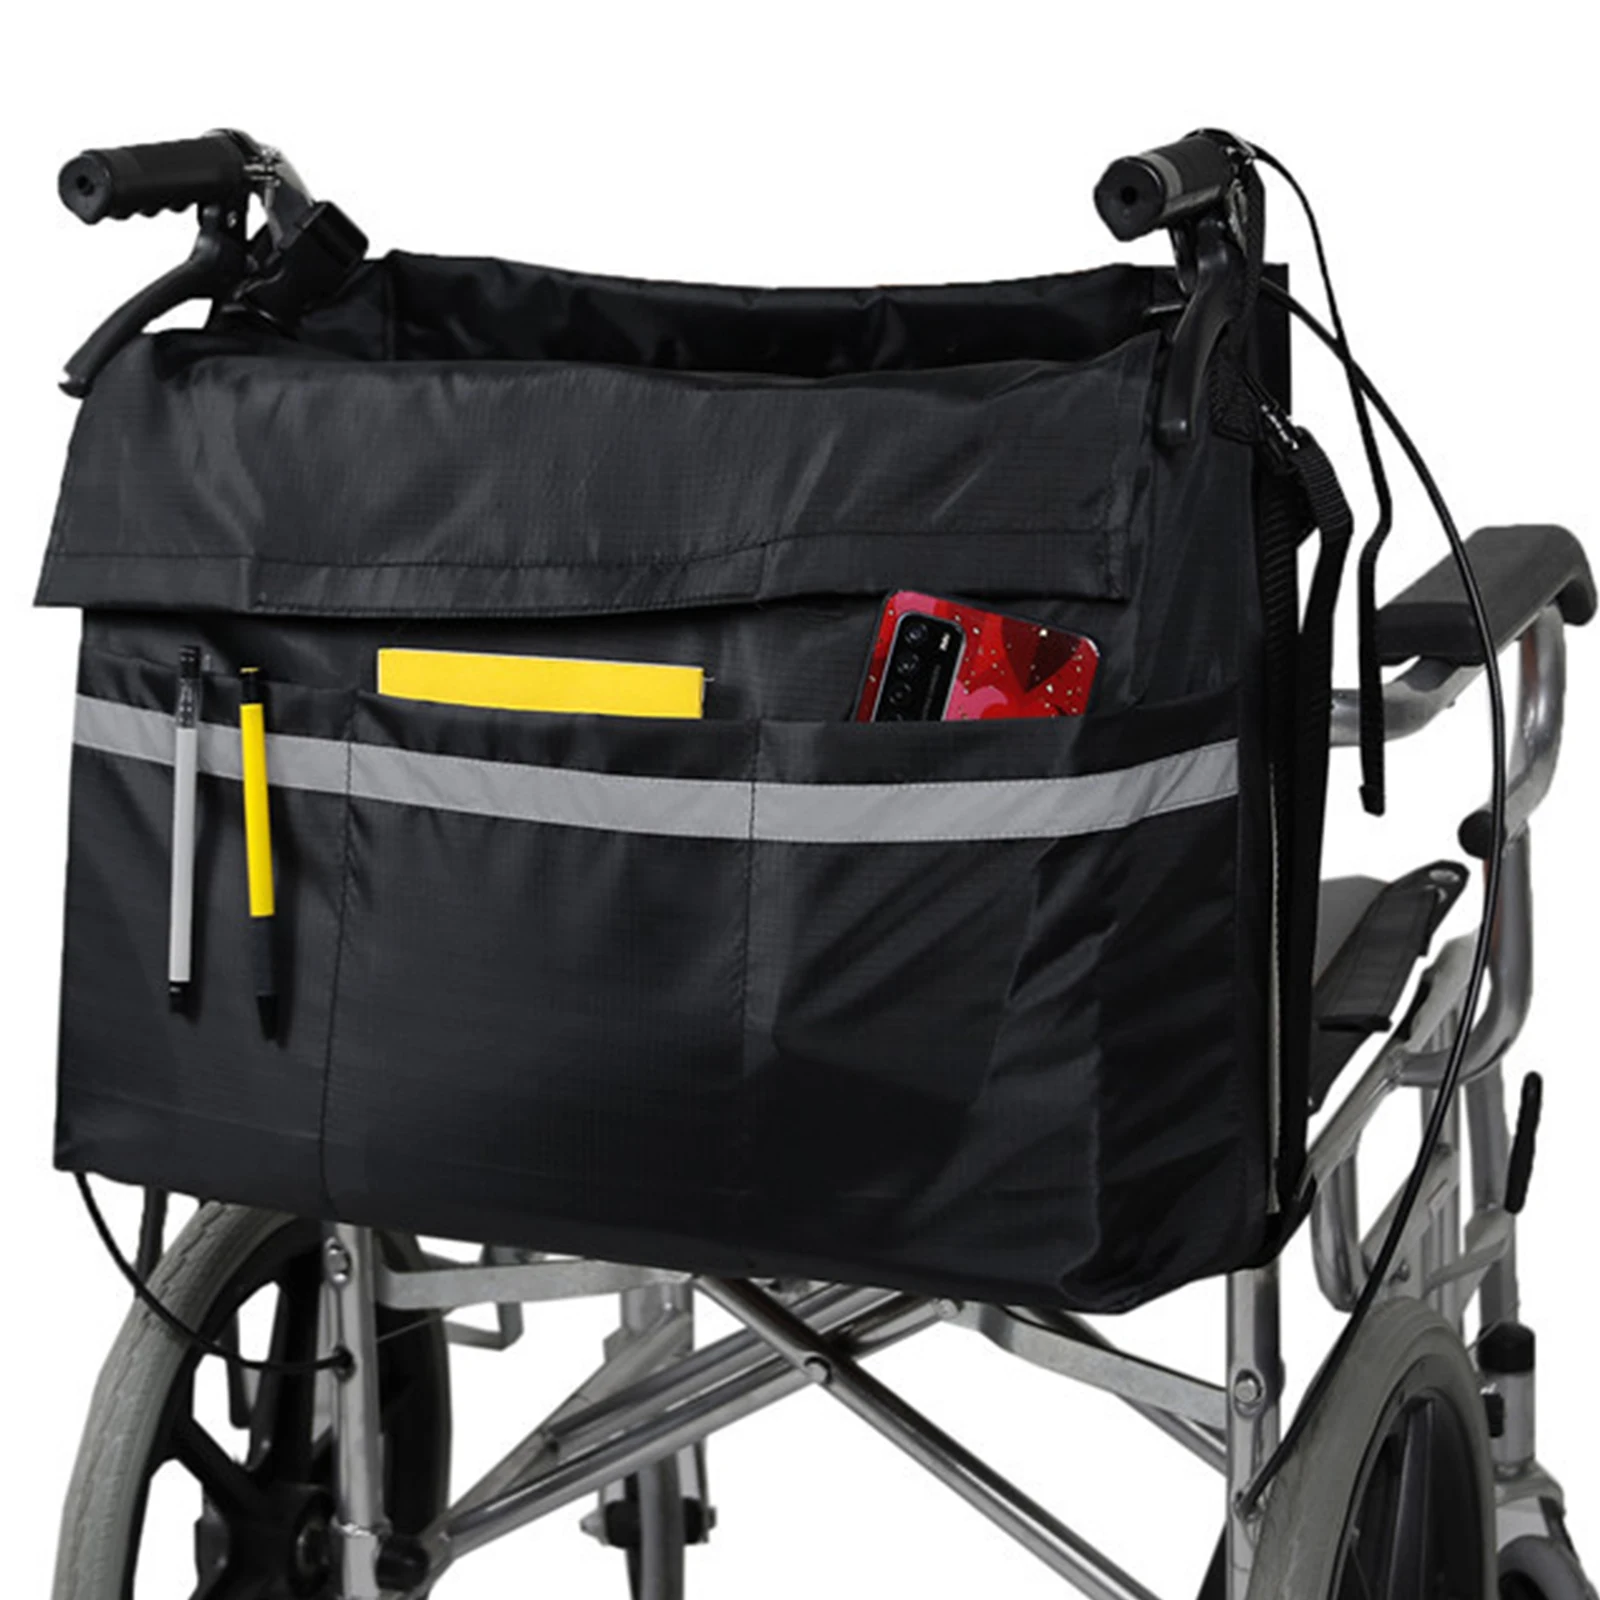 

Сумка для инвалидной коляски съемная сумка для инвалидной коляски водонепроницаемая сумка для хранения с безопасной светоотражающей полосой легкая электрическая